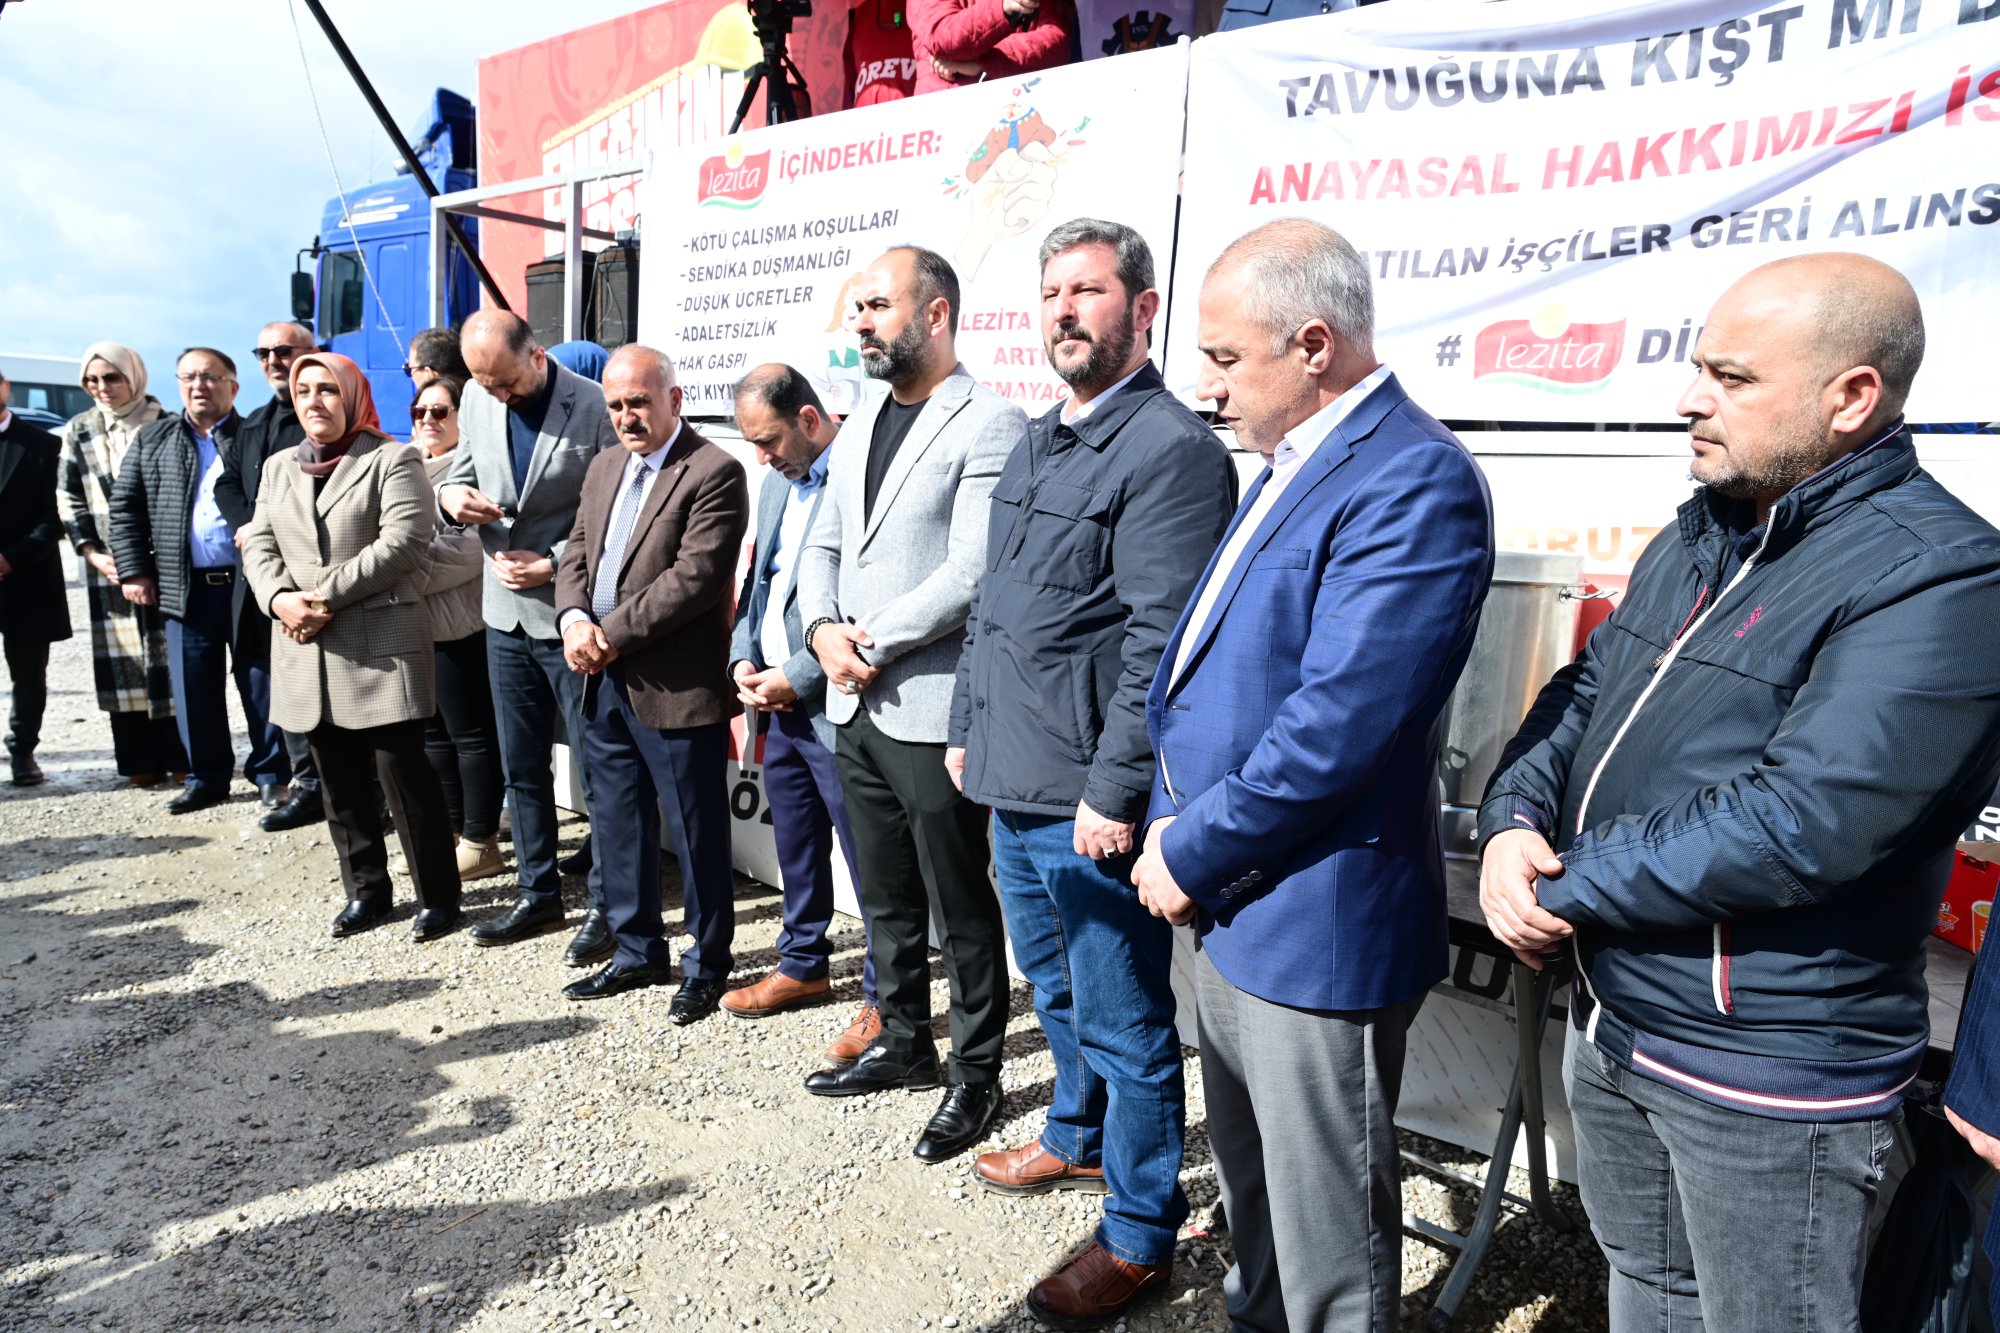 Hak- Genel Bakan Arslandan Grevdeki Lezita ilerine Destek Ziyareti